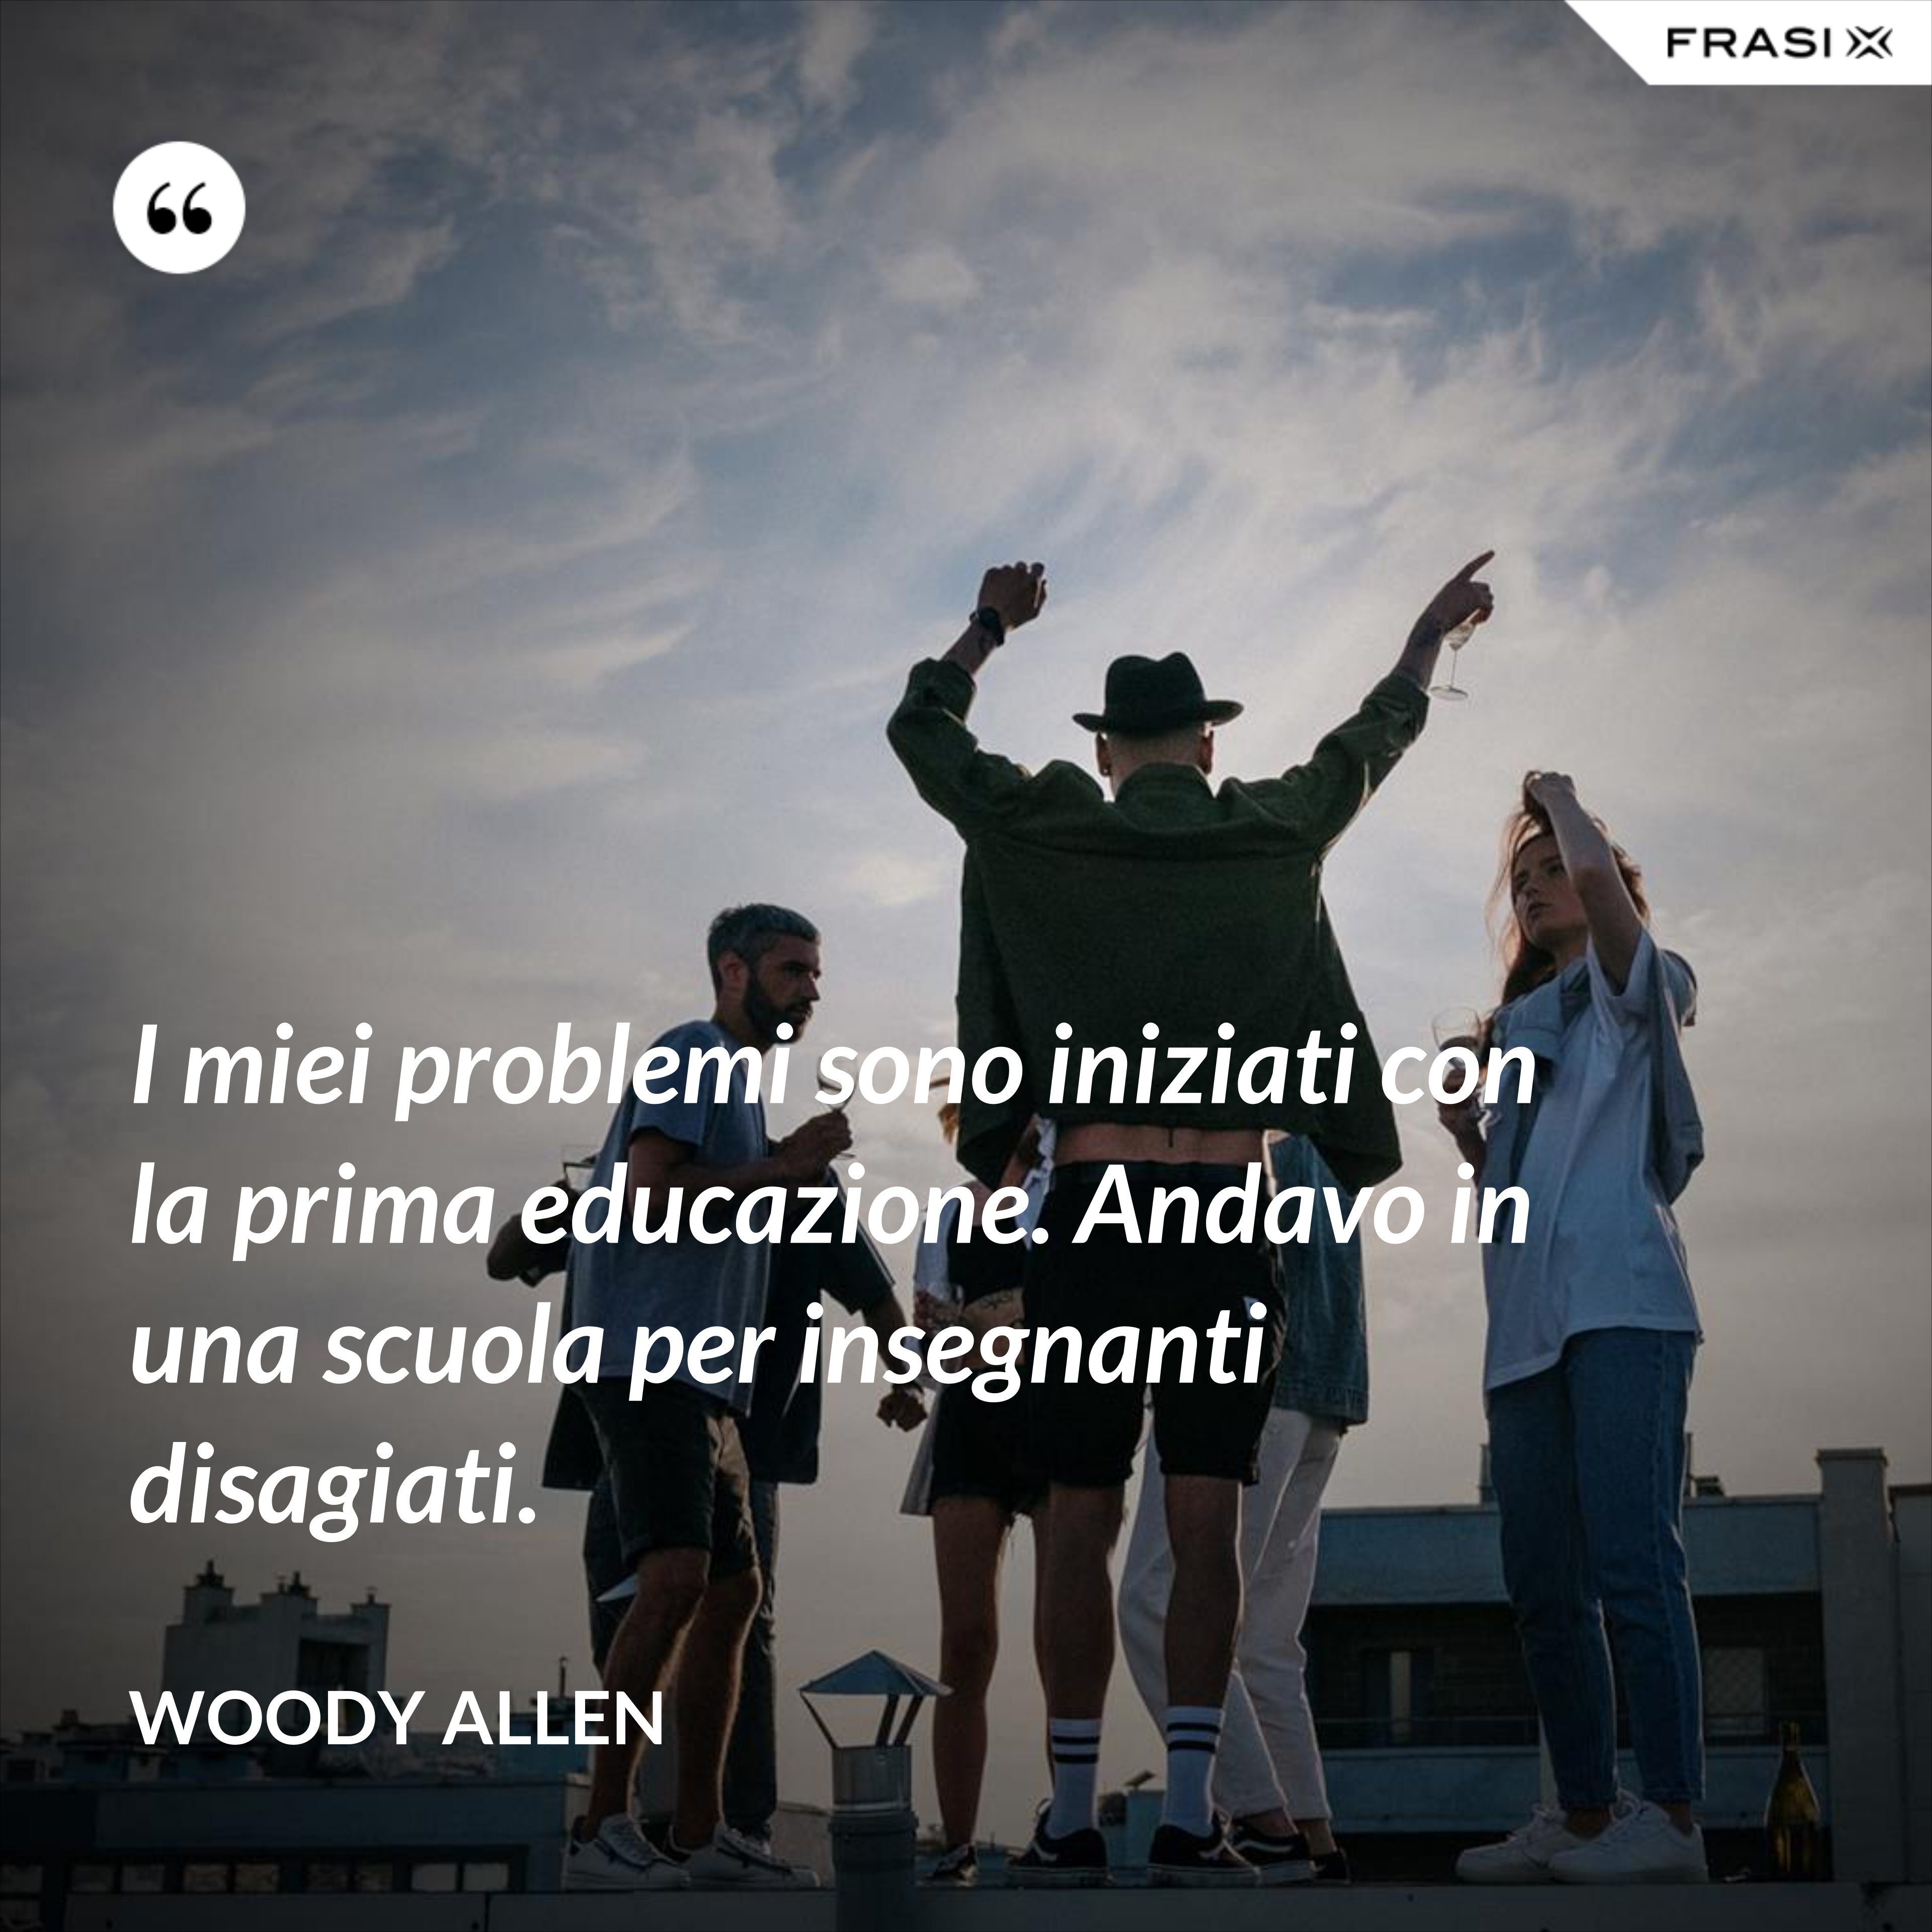 I miei problemi sono iniziati con la prima educazione. Andavo in una scuola per insegnanti disagiati. - Woody Allen